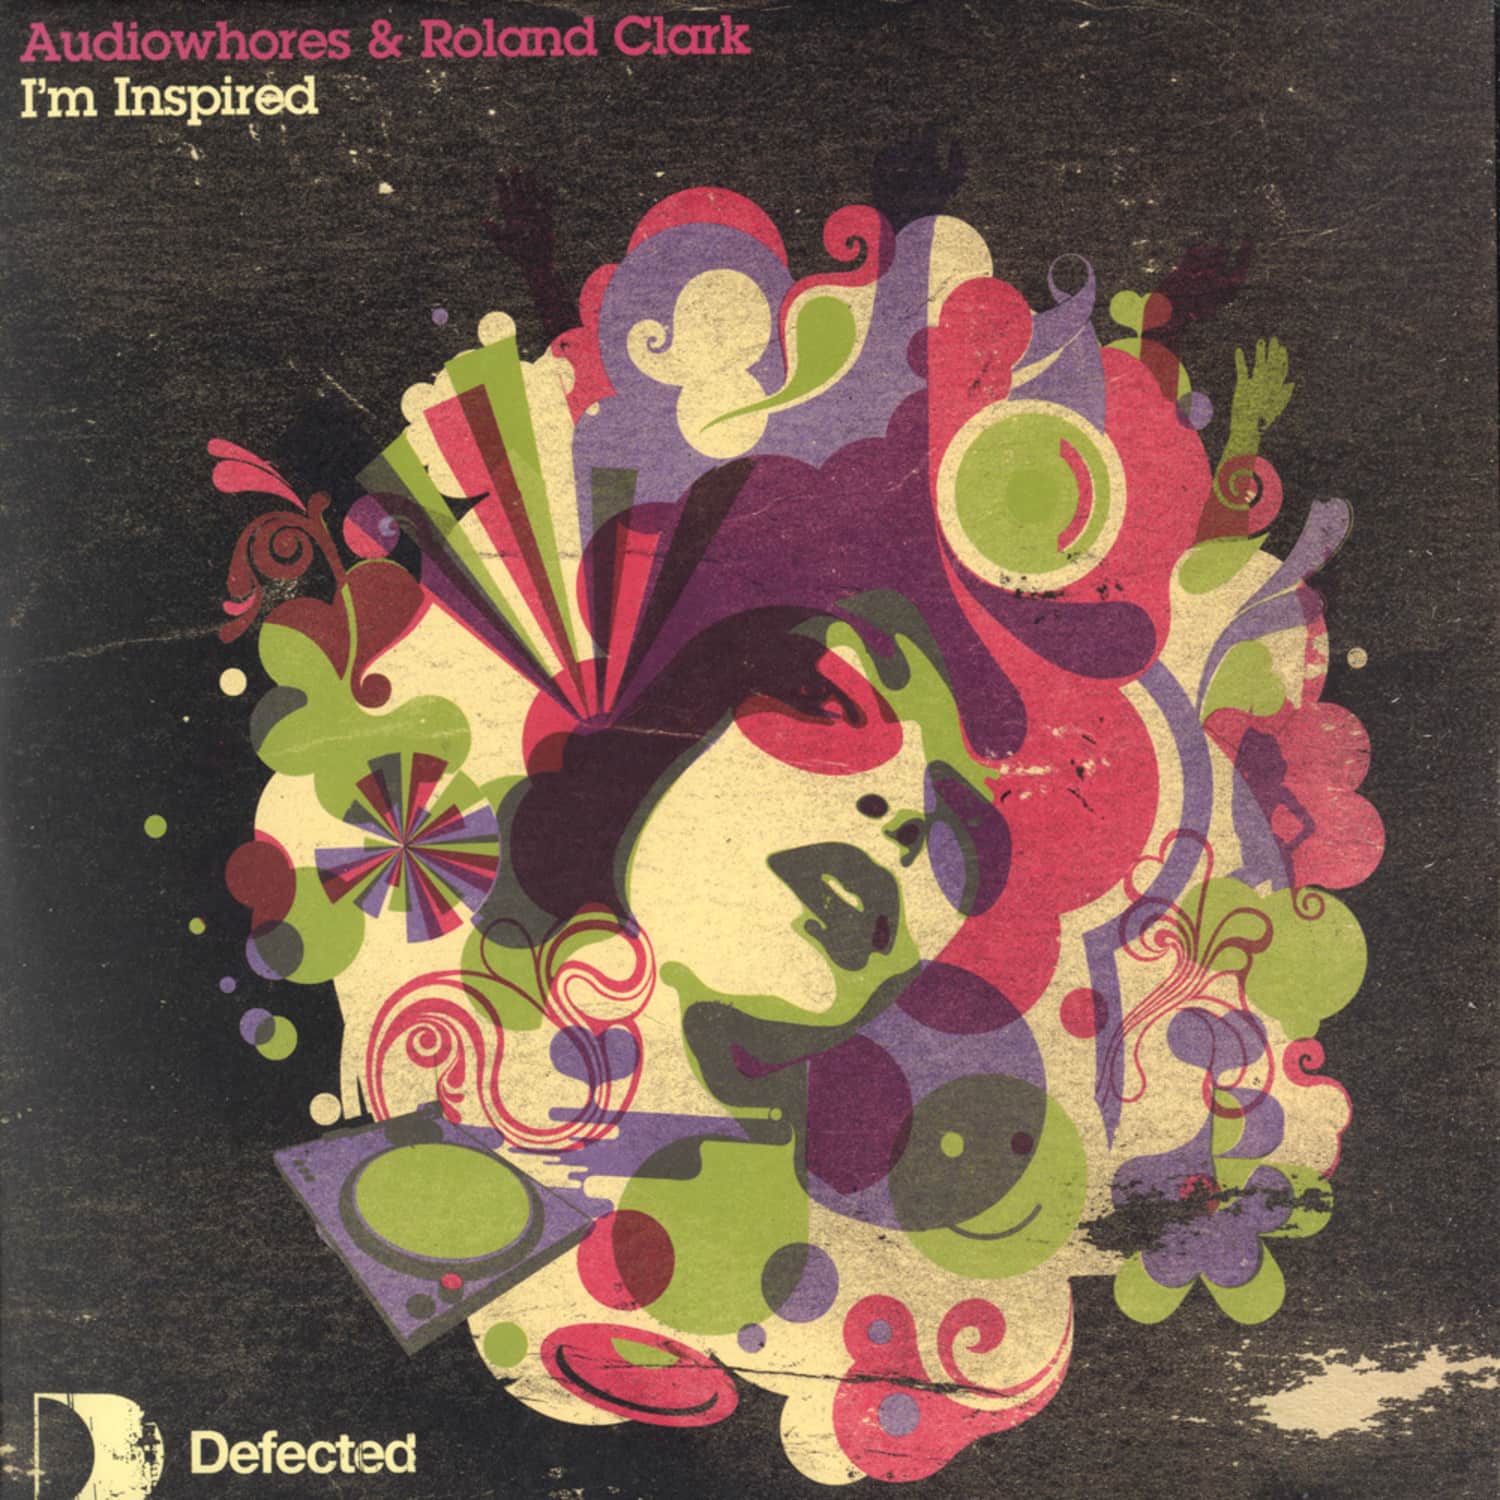 Audiowhores & Roland Clark - IM INSPIRED